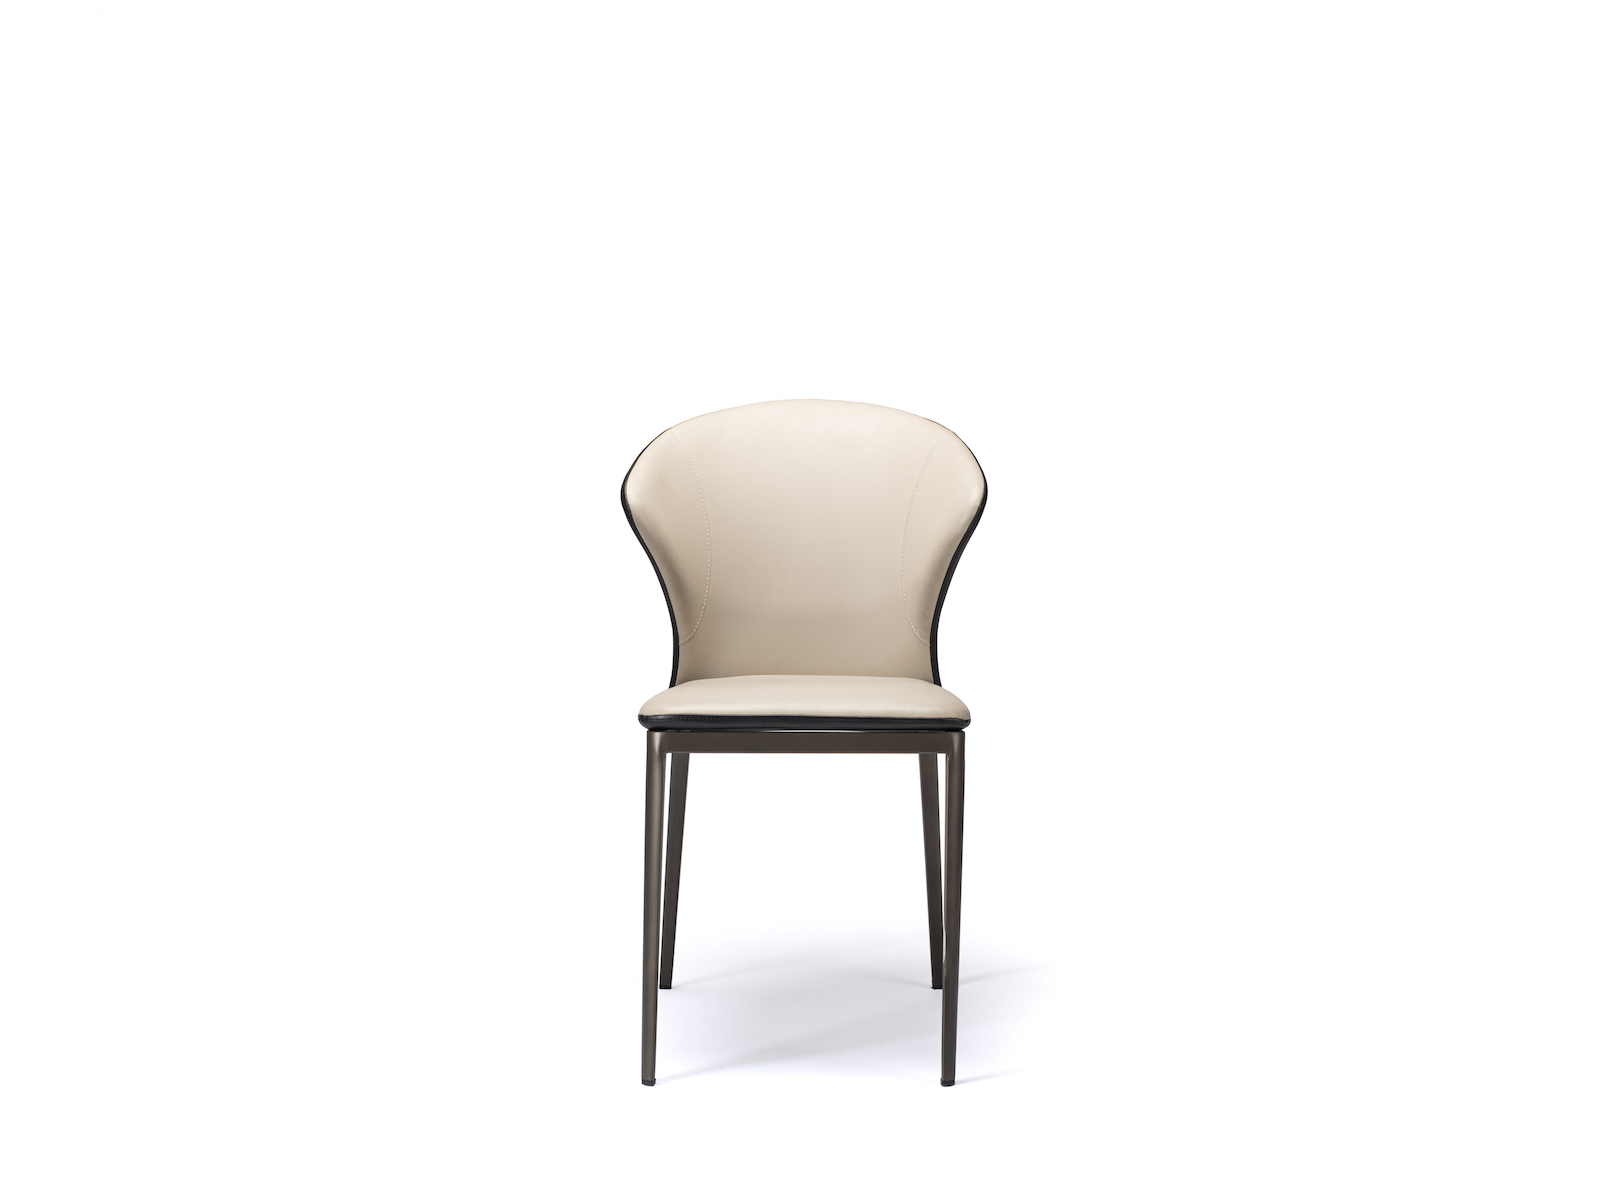 Sardenga dining chair